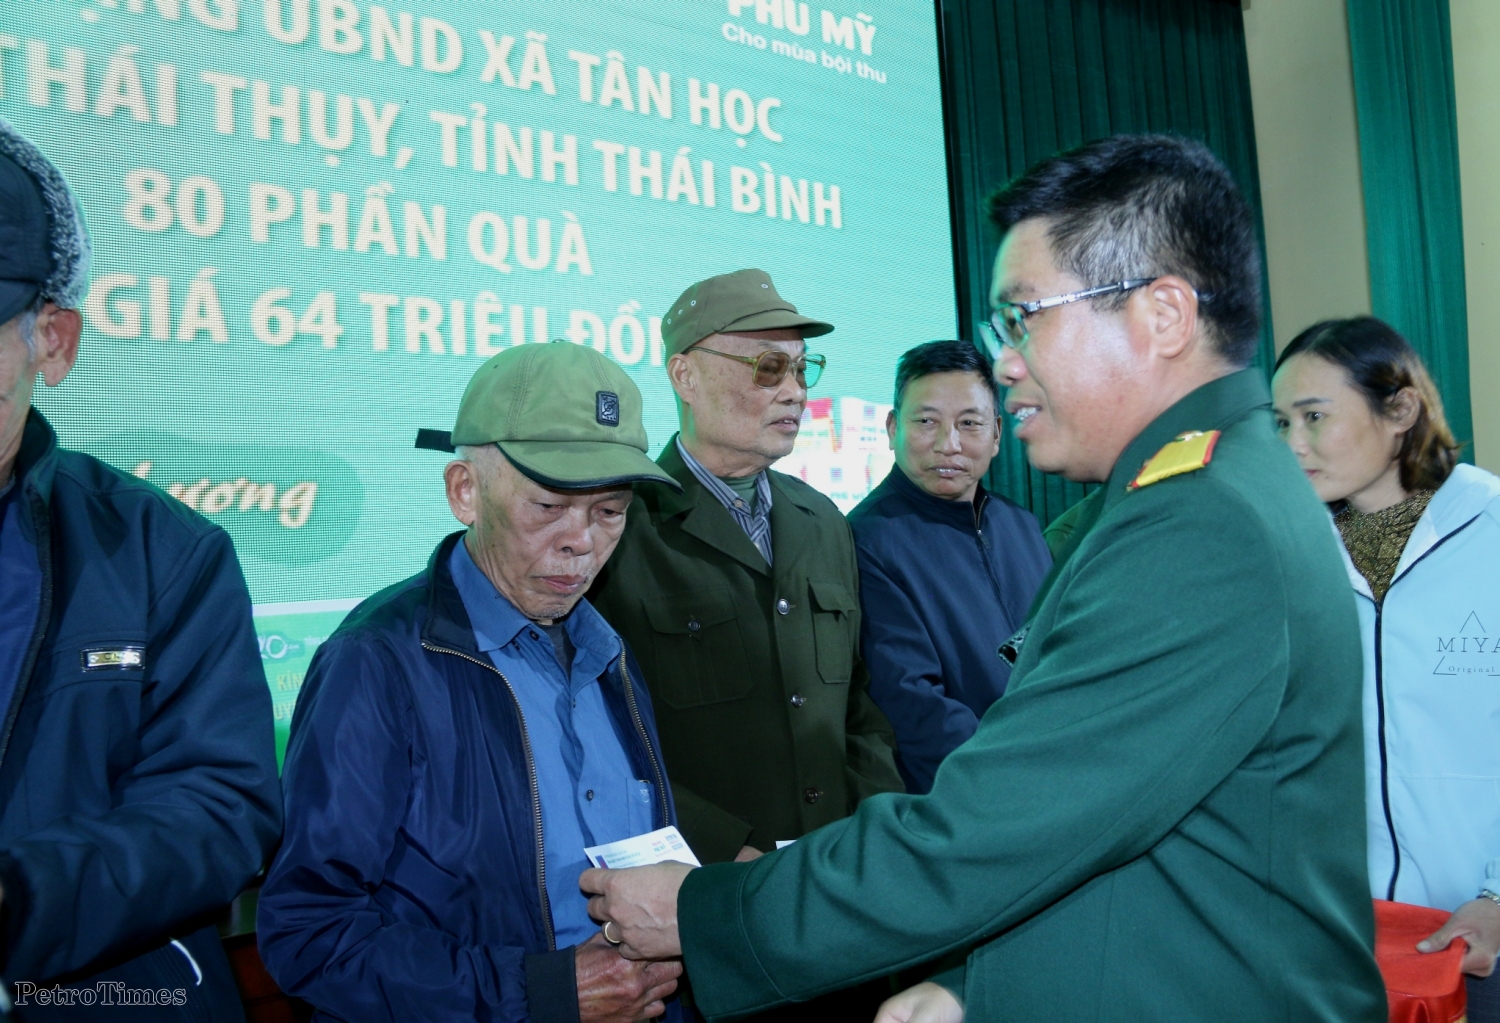 Hội Cựu chiến binh PVFCCo tổ chức chương trình “Xuân yêu thương - Tết sẻ chia” tại Nam Định, Thái Bình